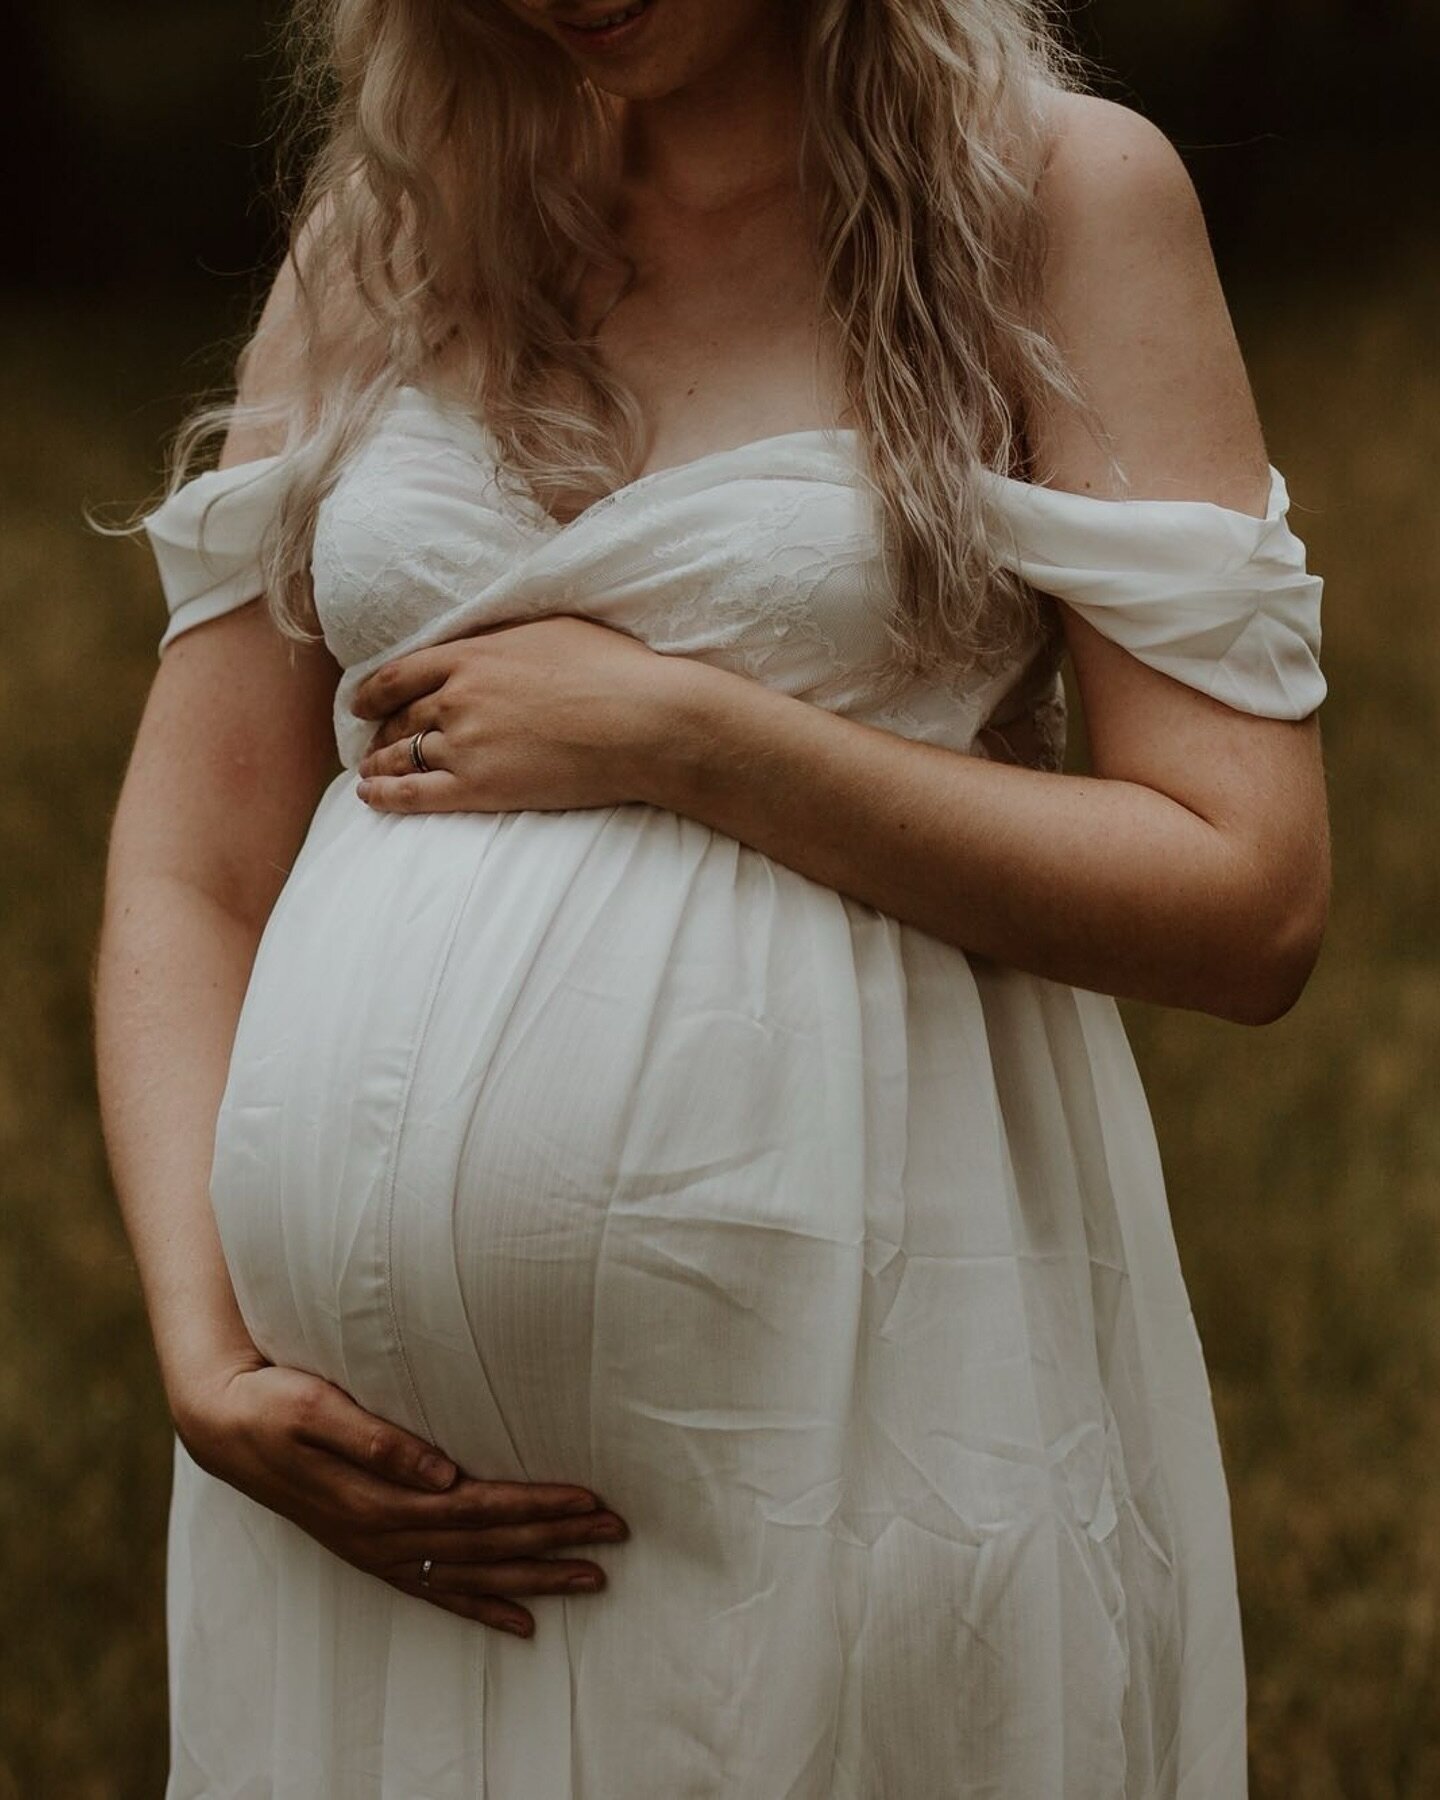 Feiere deine Schwangerschaft und halte sie auf wundersch&ouml;nen Bildern fest! ✨

#maternityphotography #pregnancy #momtobe #motherhood #babybauchshooting #pregnantstyle #maternity #schwangerschaftsshooting #babybauch #schwanger2024 #babybelly #baby